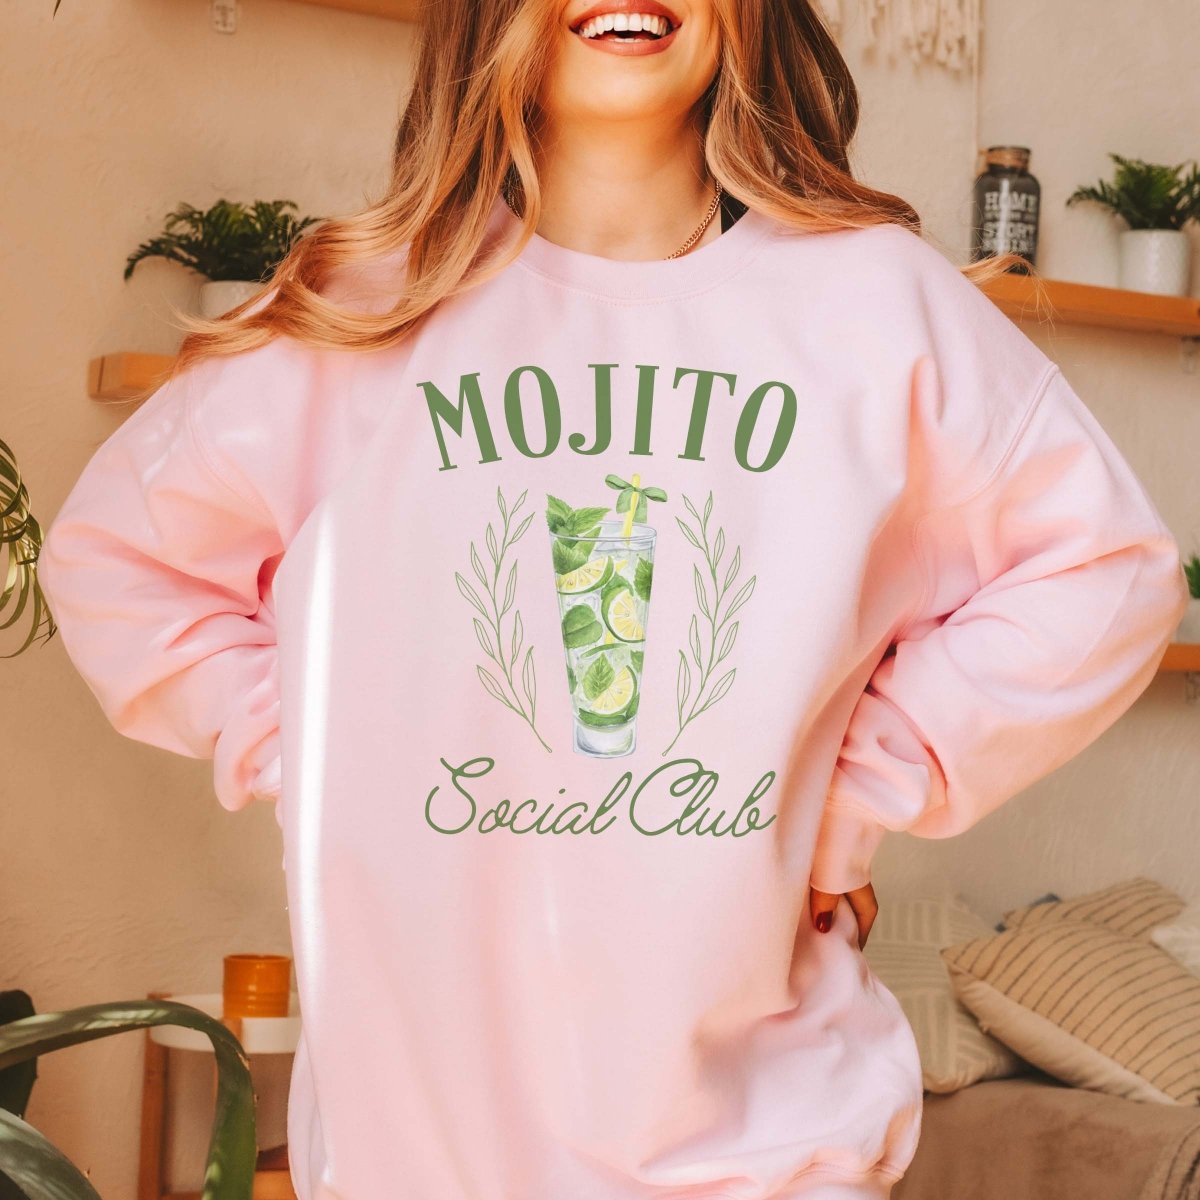 Mojito Social Club Sweatshirt - Limeberry Designs